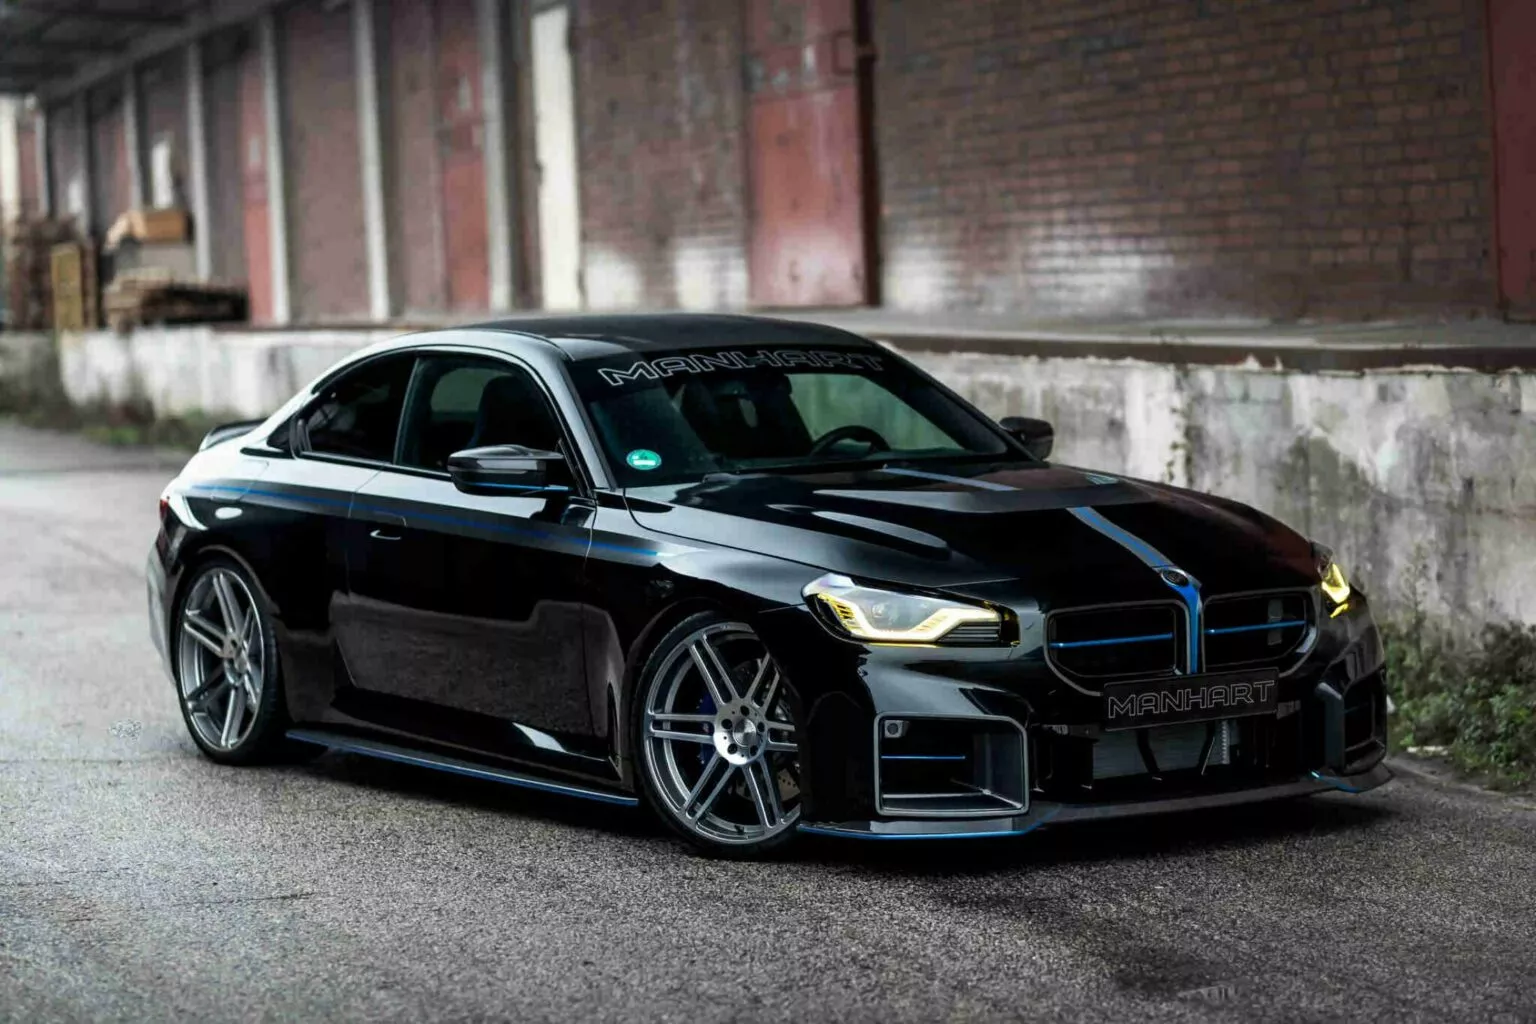 El BMW M2 vestido de negro y con el nuevo kit de Manhart es así de espectacular